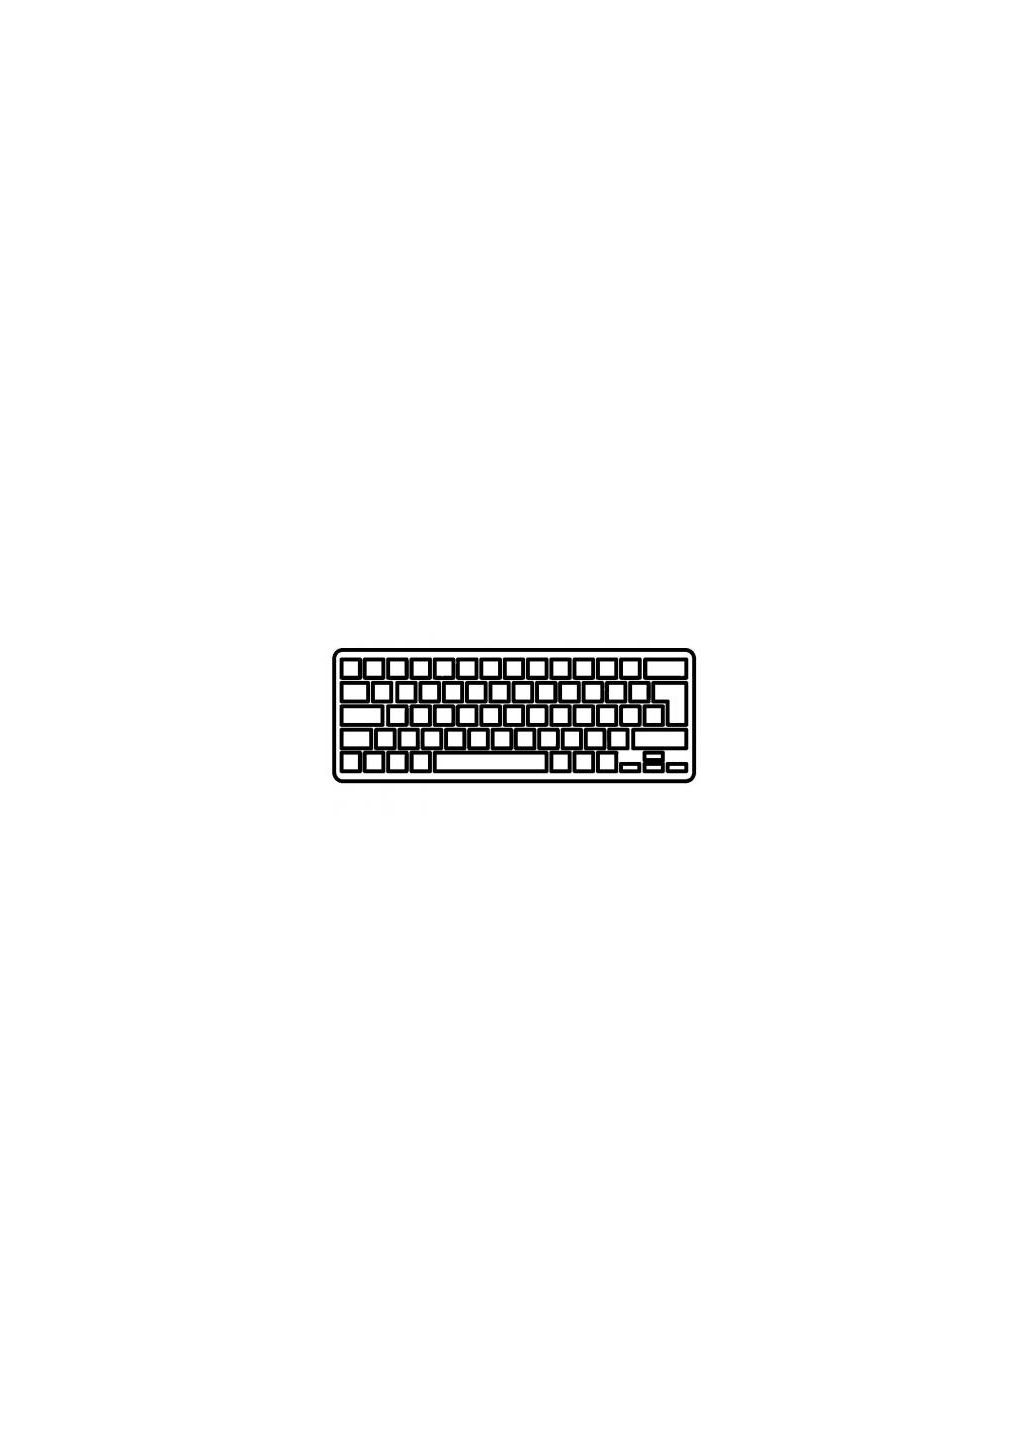 Клавиатура ноутбука Inspiron M101z Series черная с красной рамкой RU (A43281) Dell inspiron m101z series черная с красной рамкой ua (276707079)